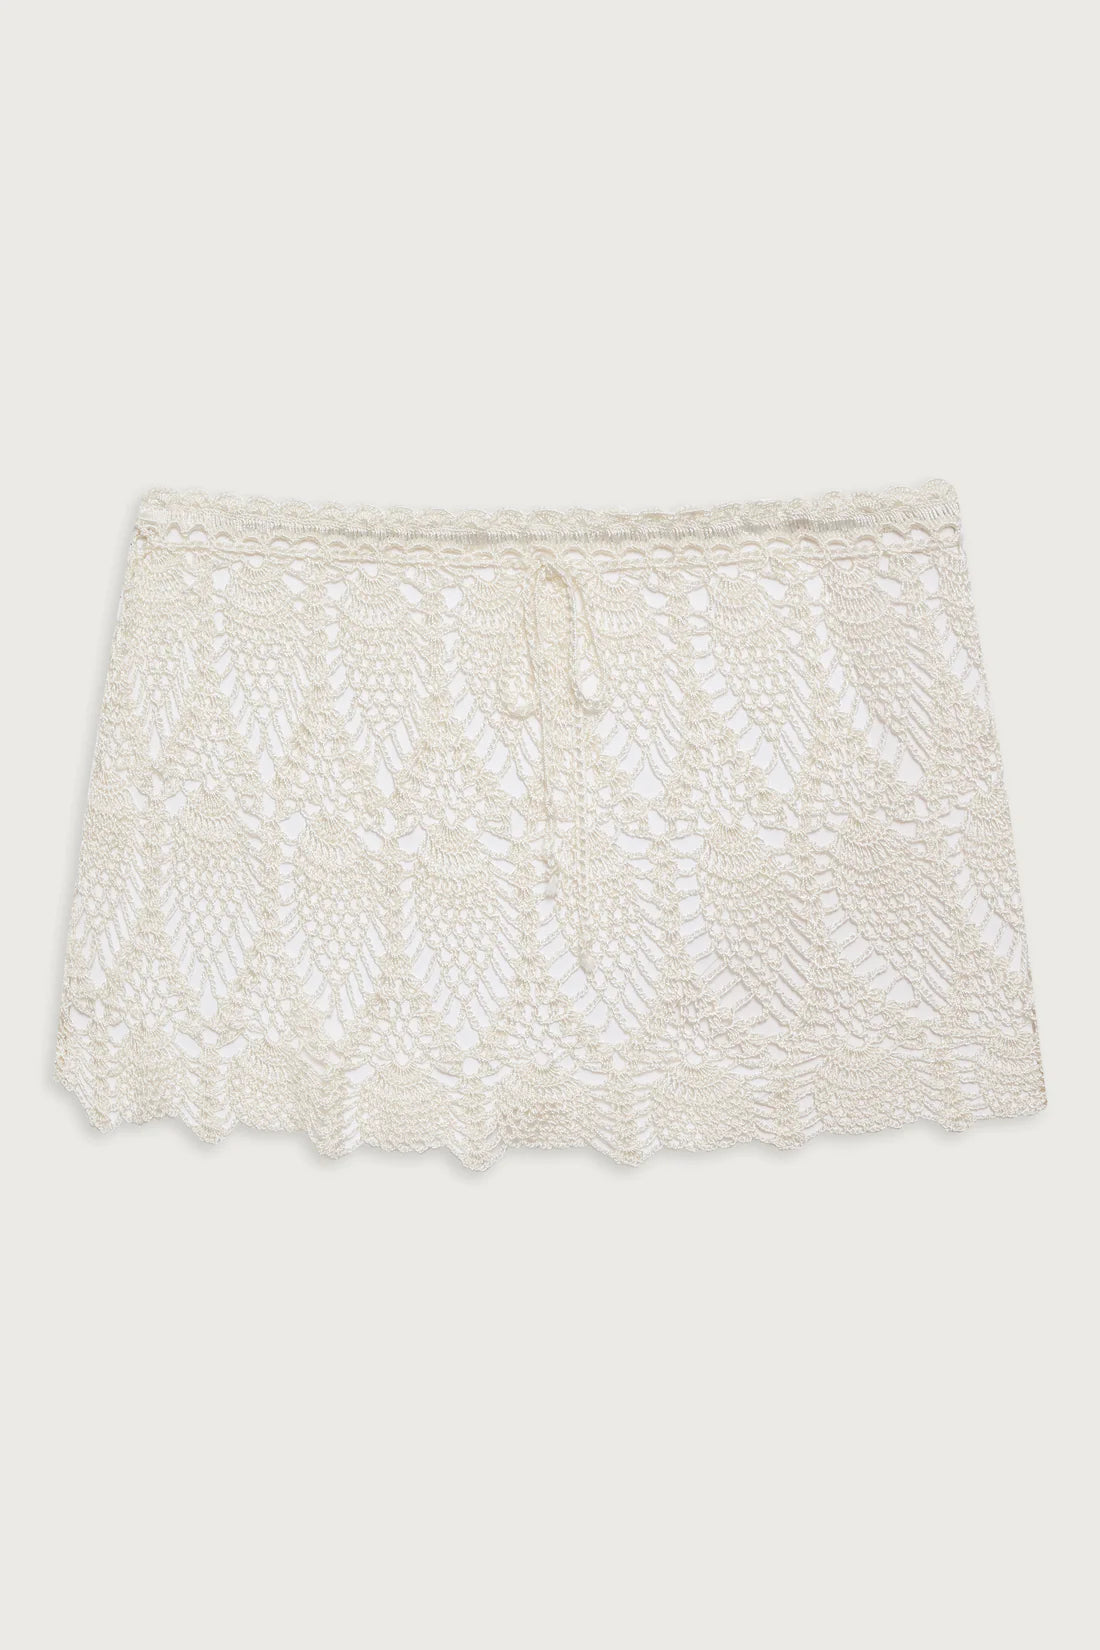 Capri Crochet Mini Skirt - ONFEMME By Lindsey's Kloset